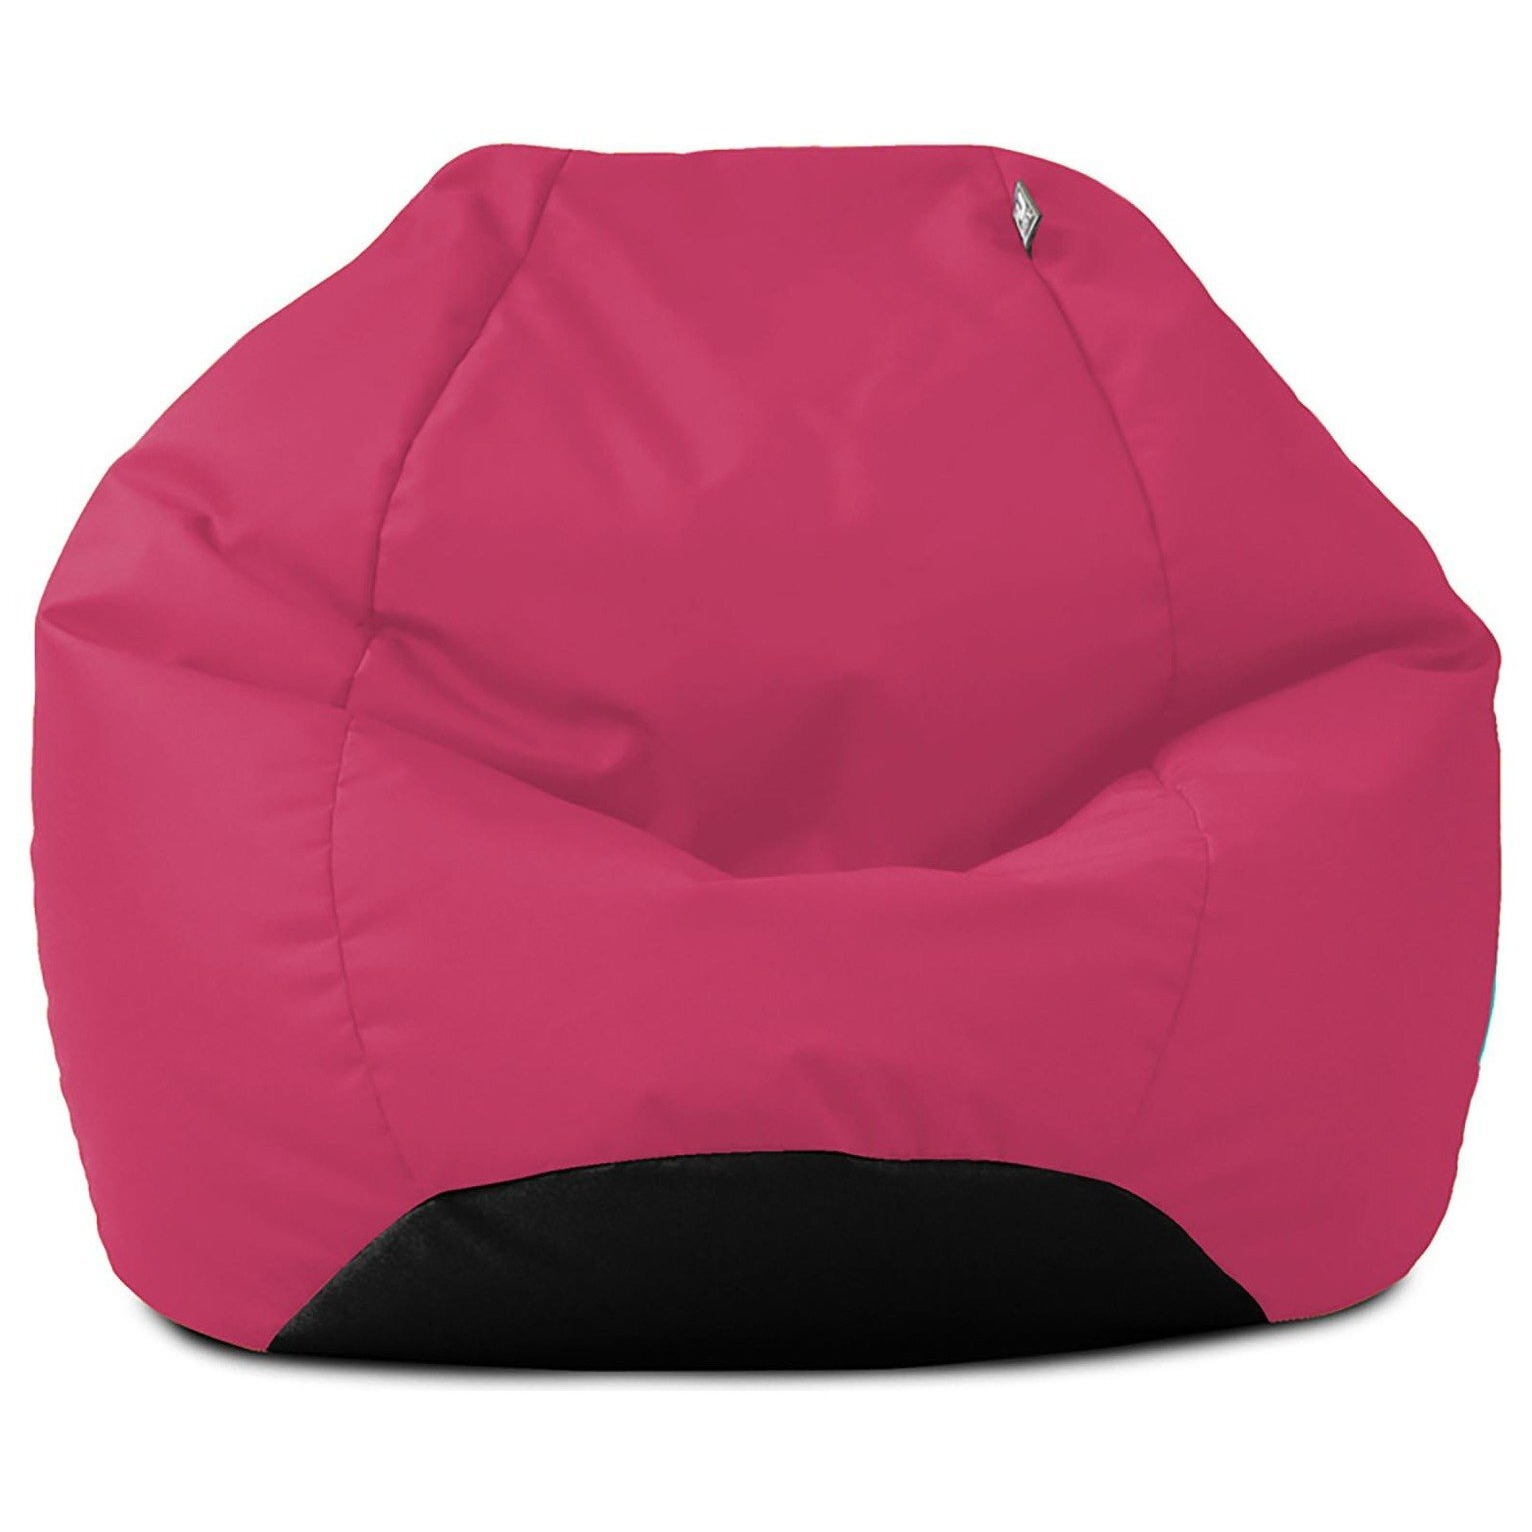 rucomfy Kids Indoor Outdoor Bean Bag - Pink - image 1